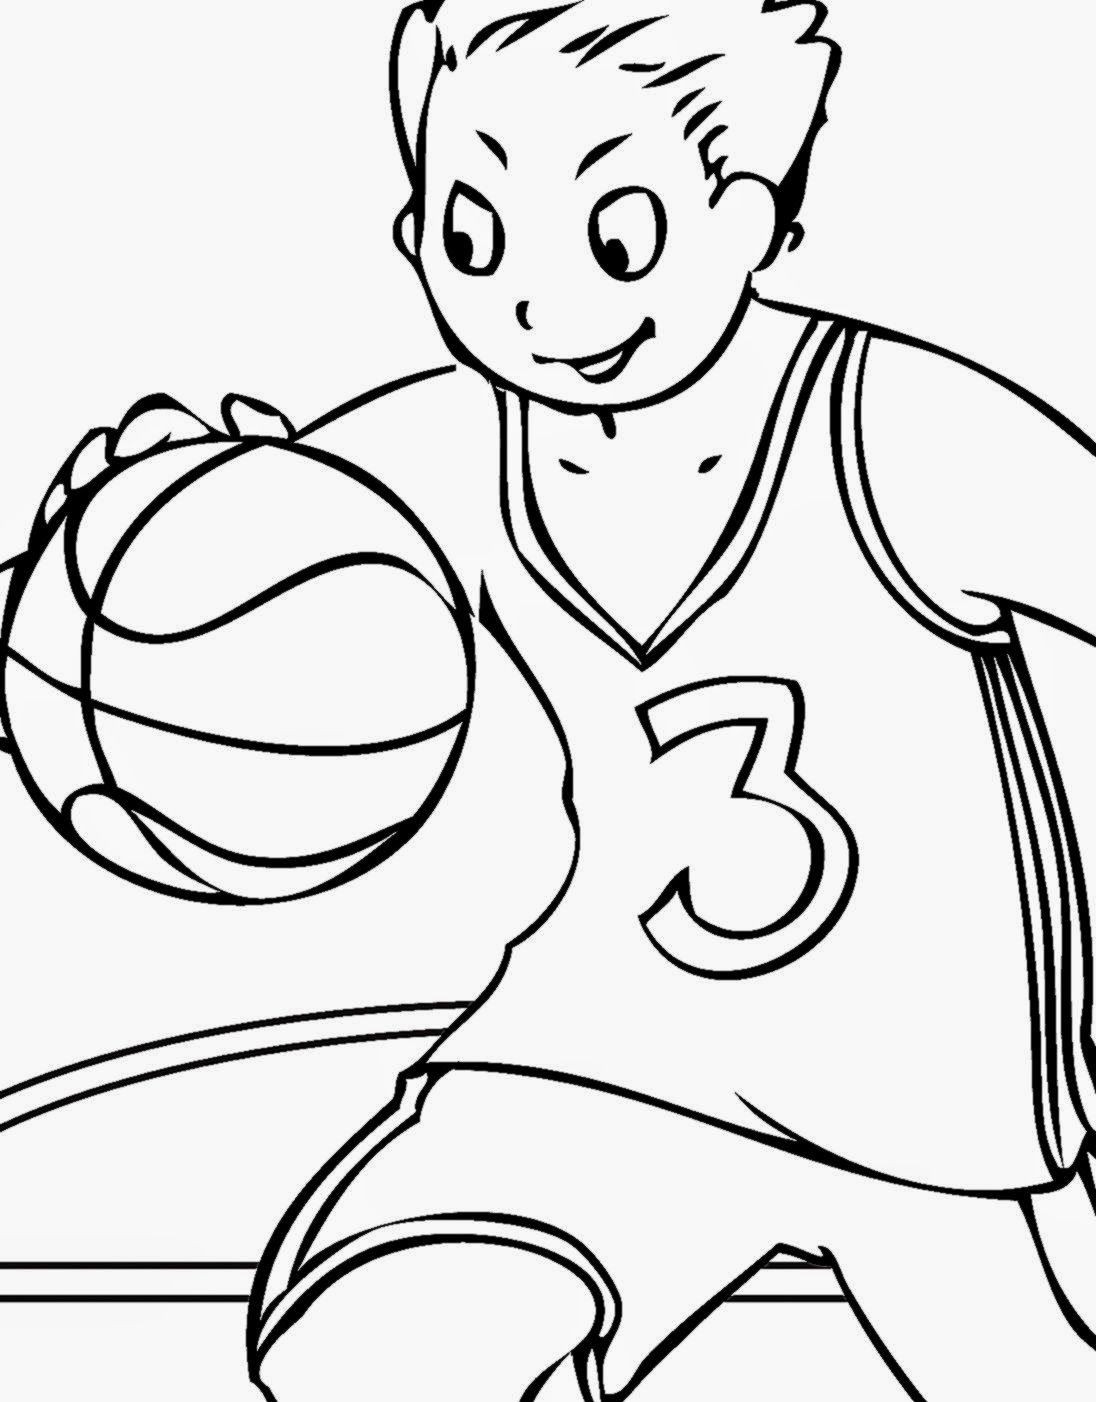 Printable Basketball Coloring Pages
 Basketball Coloring Pages Printable Coloring Home